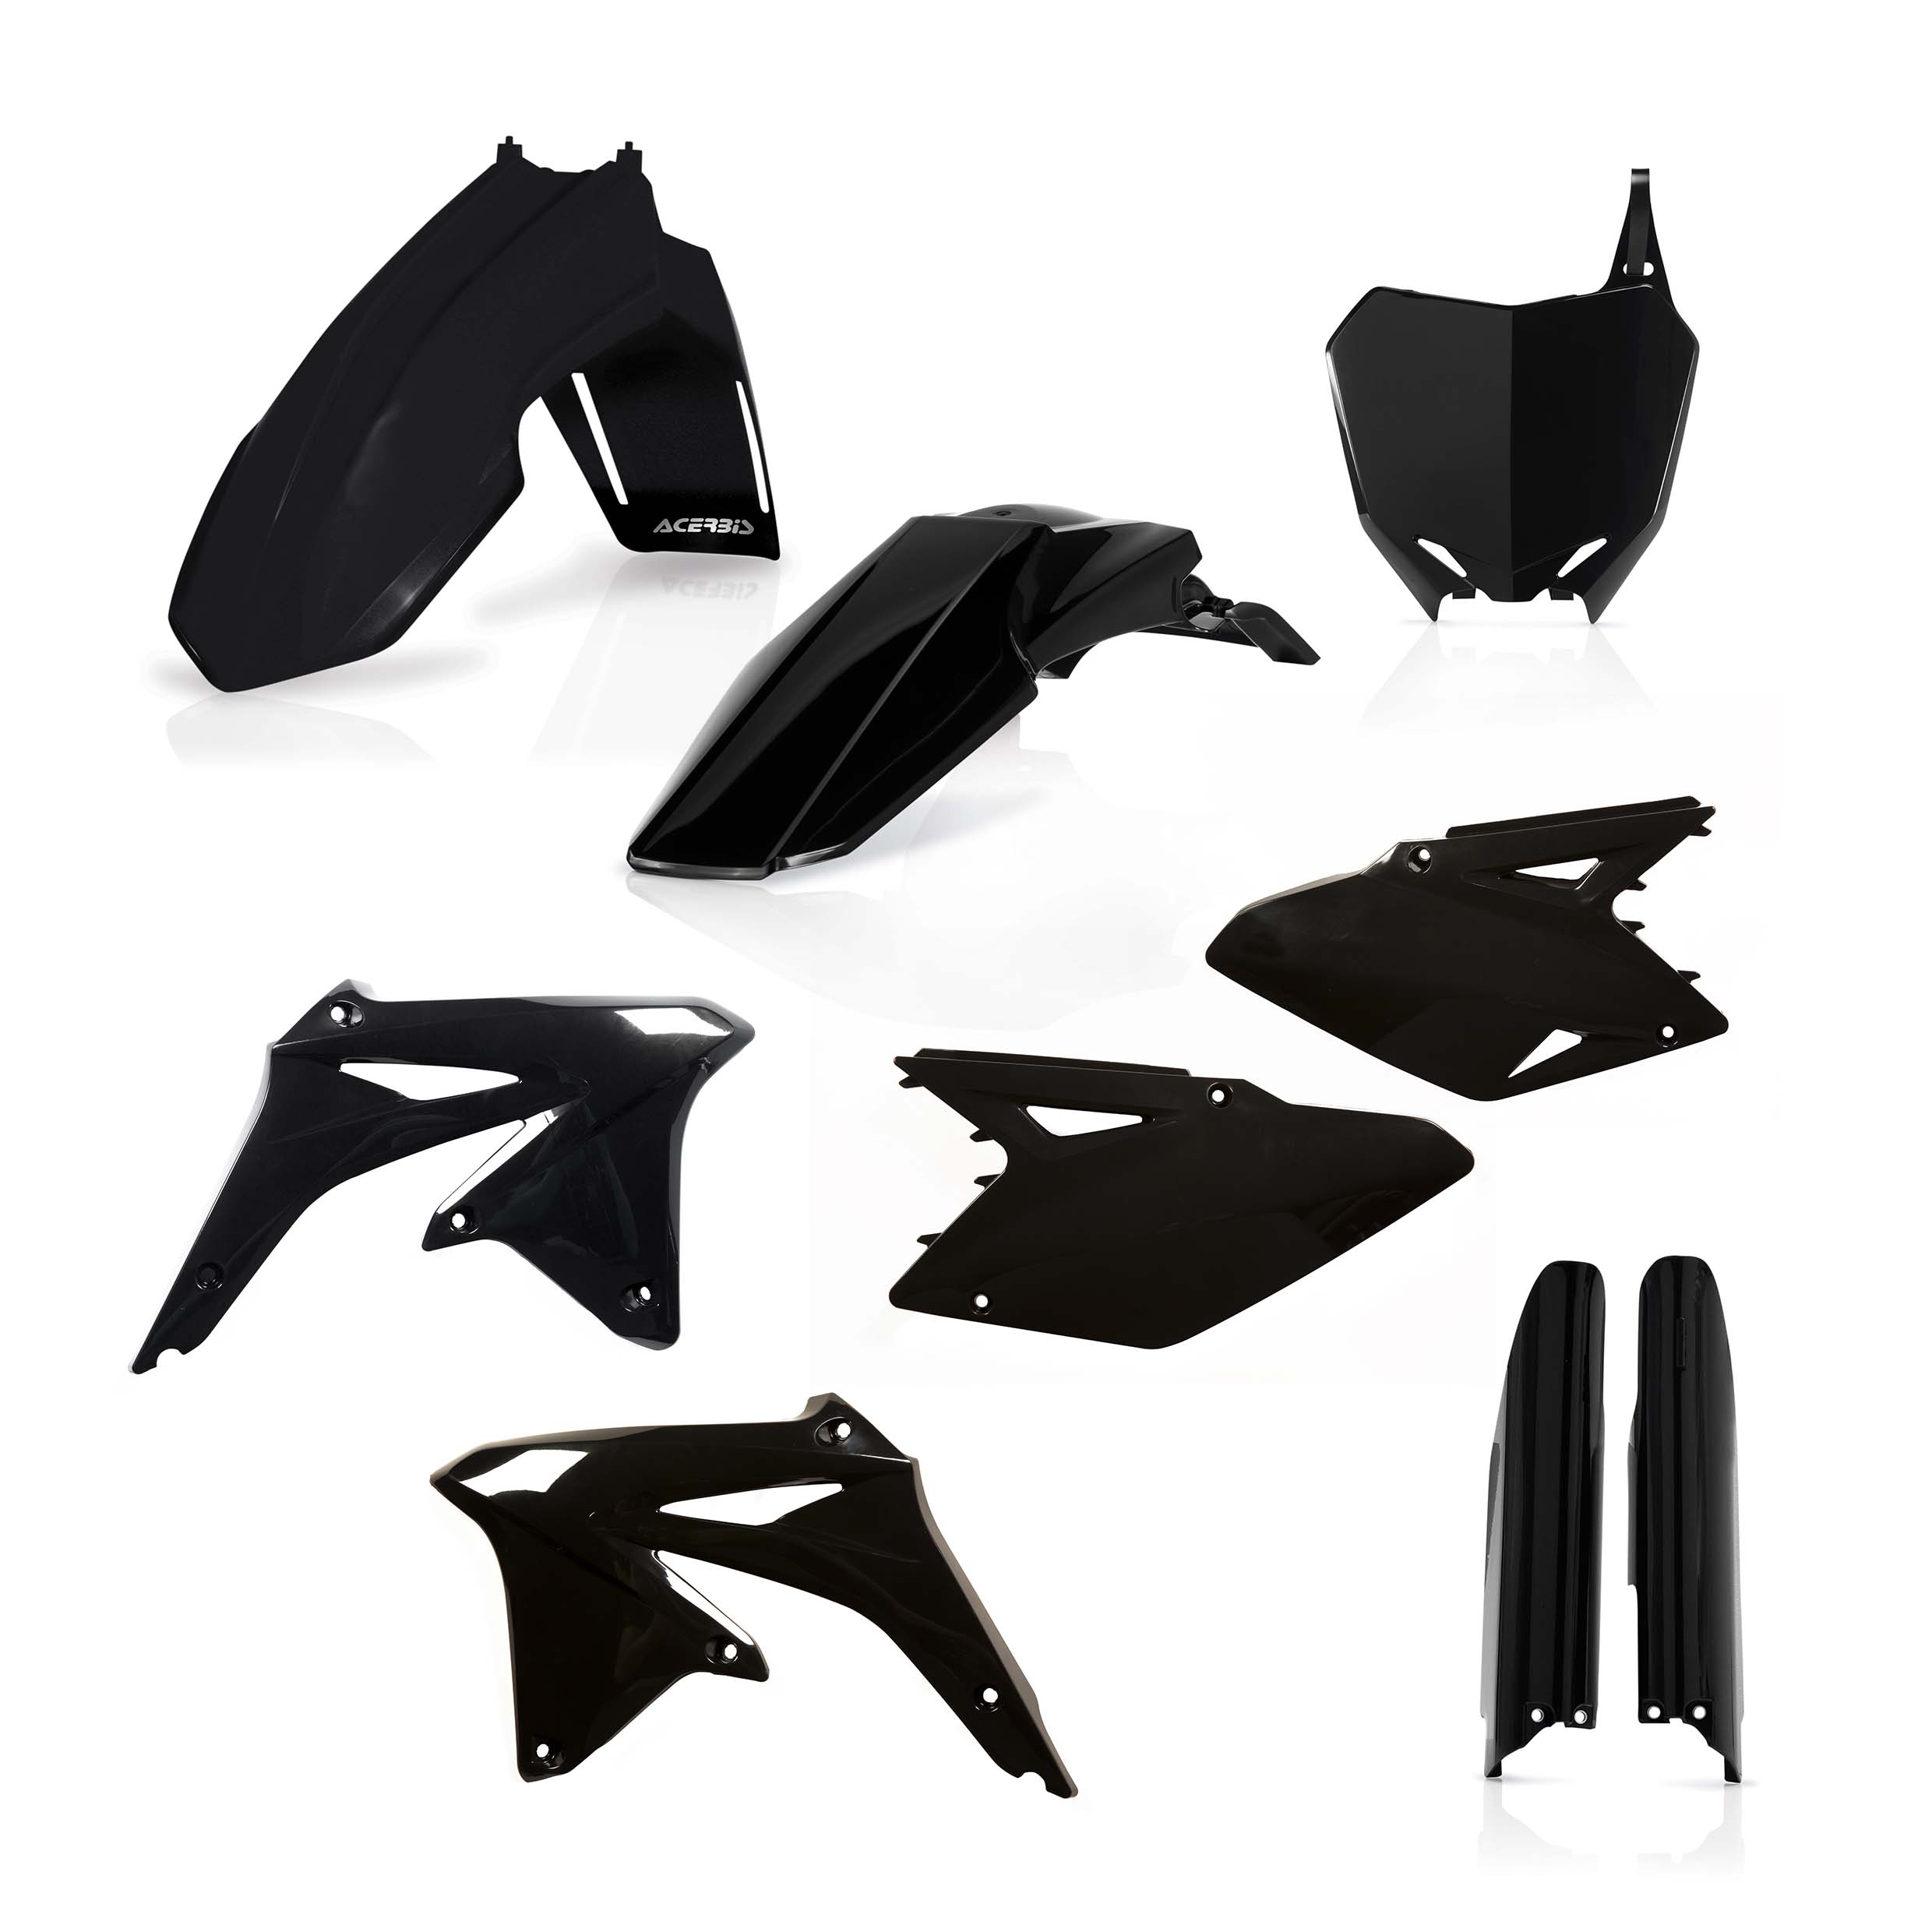 Plastikteile für deine Suzuki RM / RM-Z 450 in schwarz bestehend aus Kotflügel vorn Kotflügel hinten Kühlerspoiler Seitenteile Gabelschützer Startnummerntafel